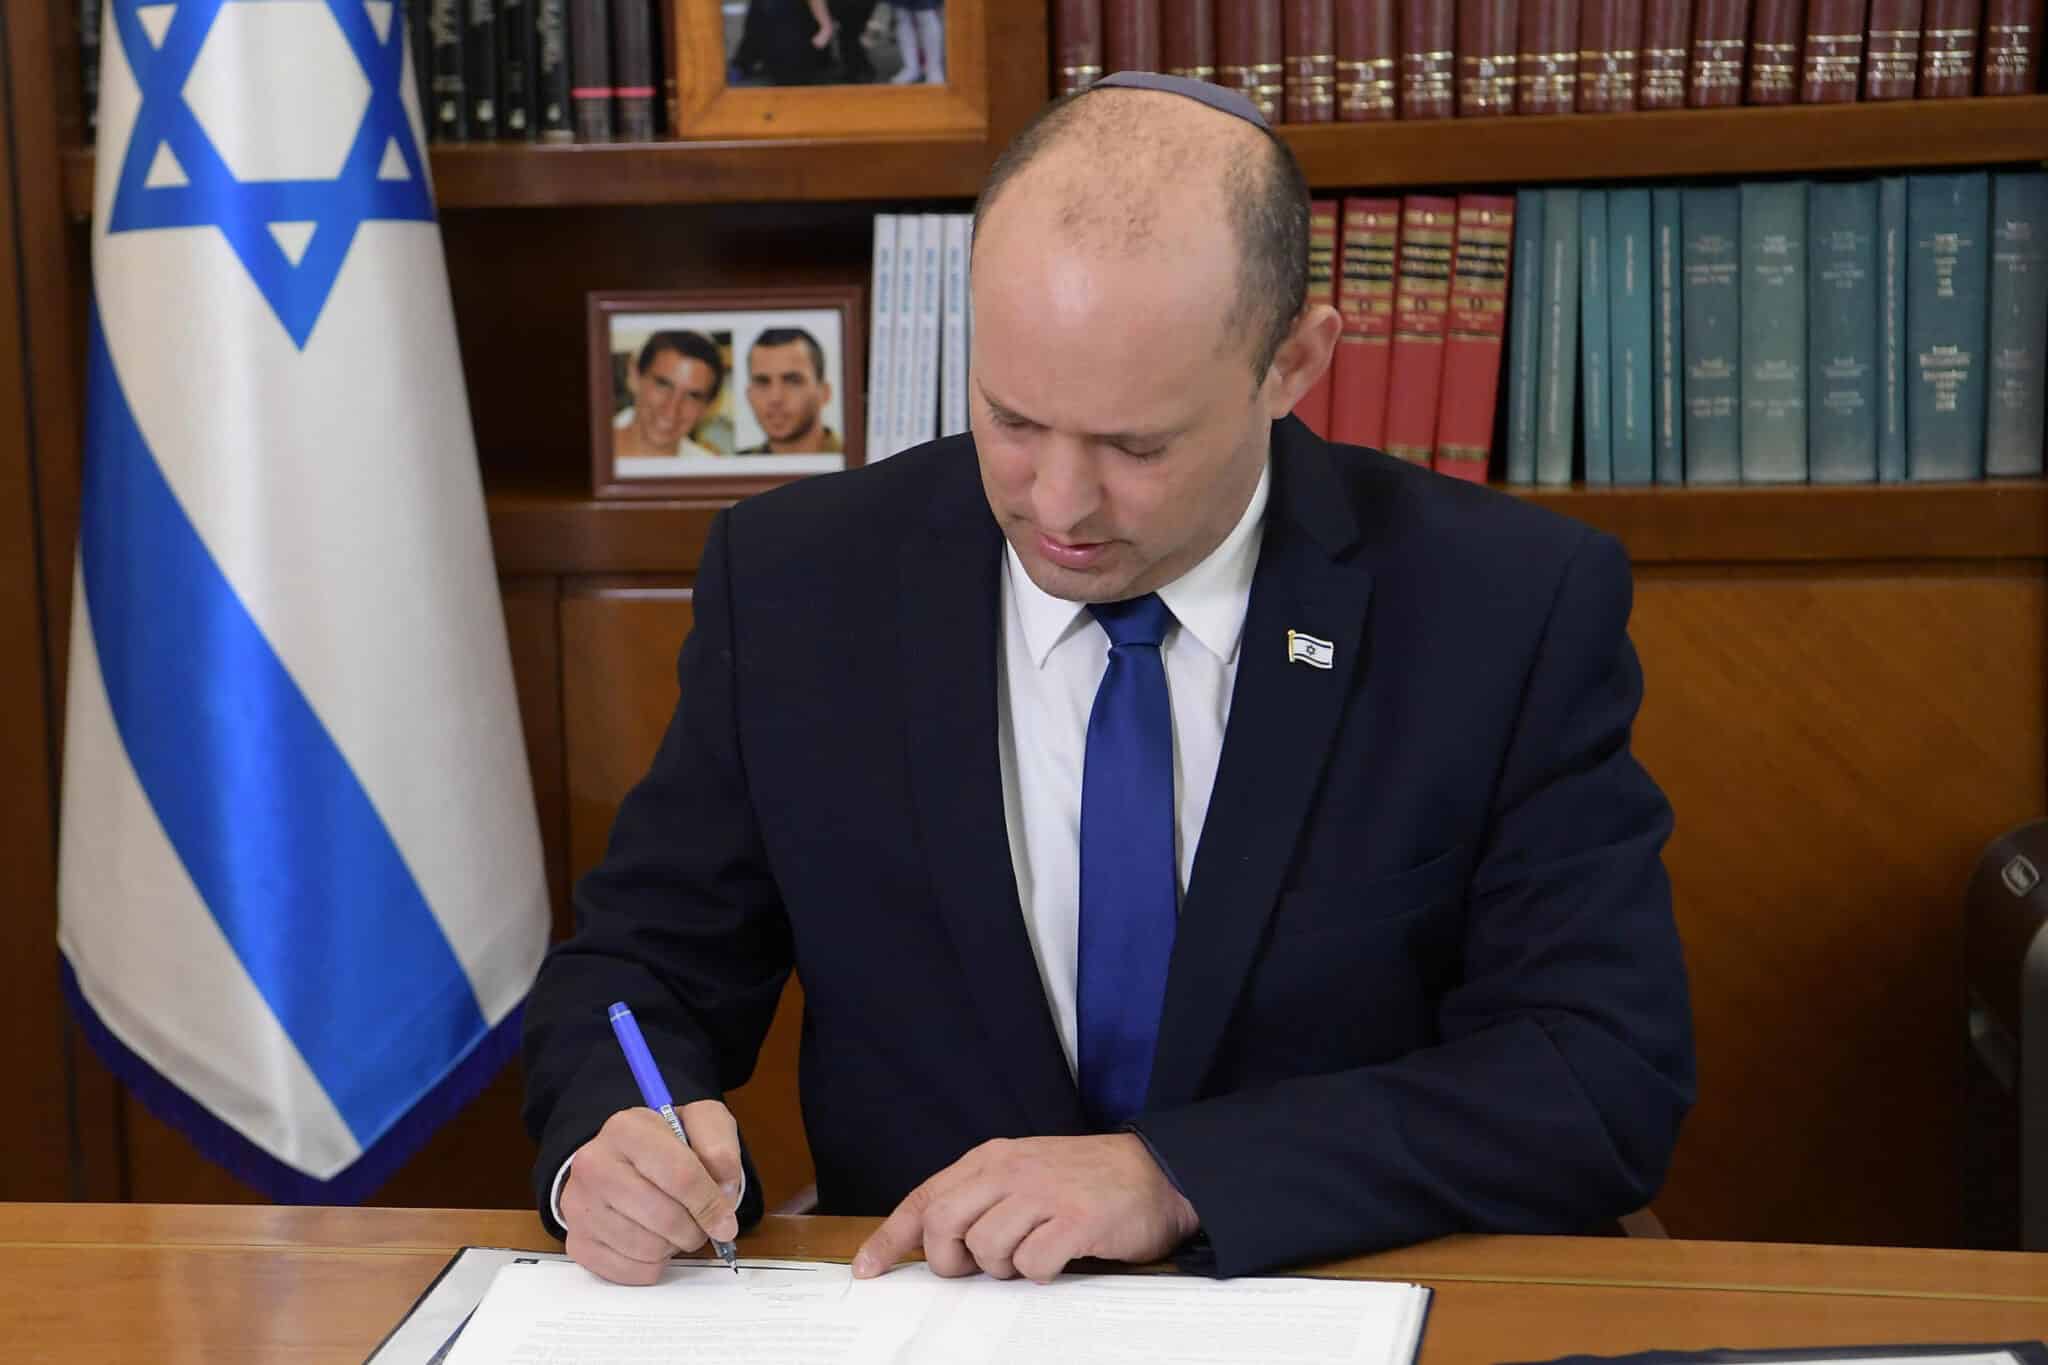 El primer ministro de Israel, Naftali Bennett.